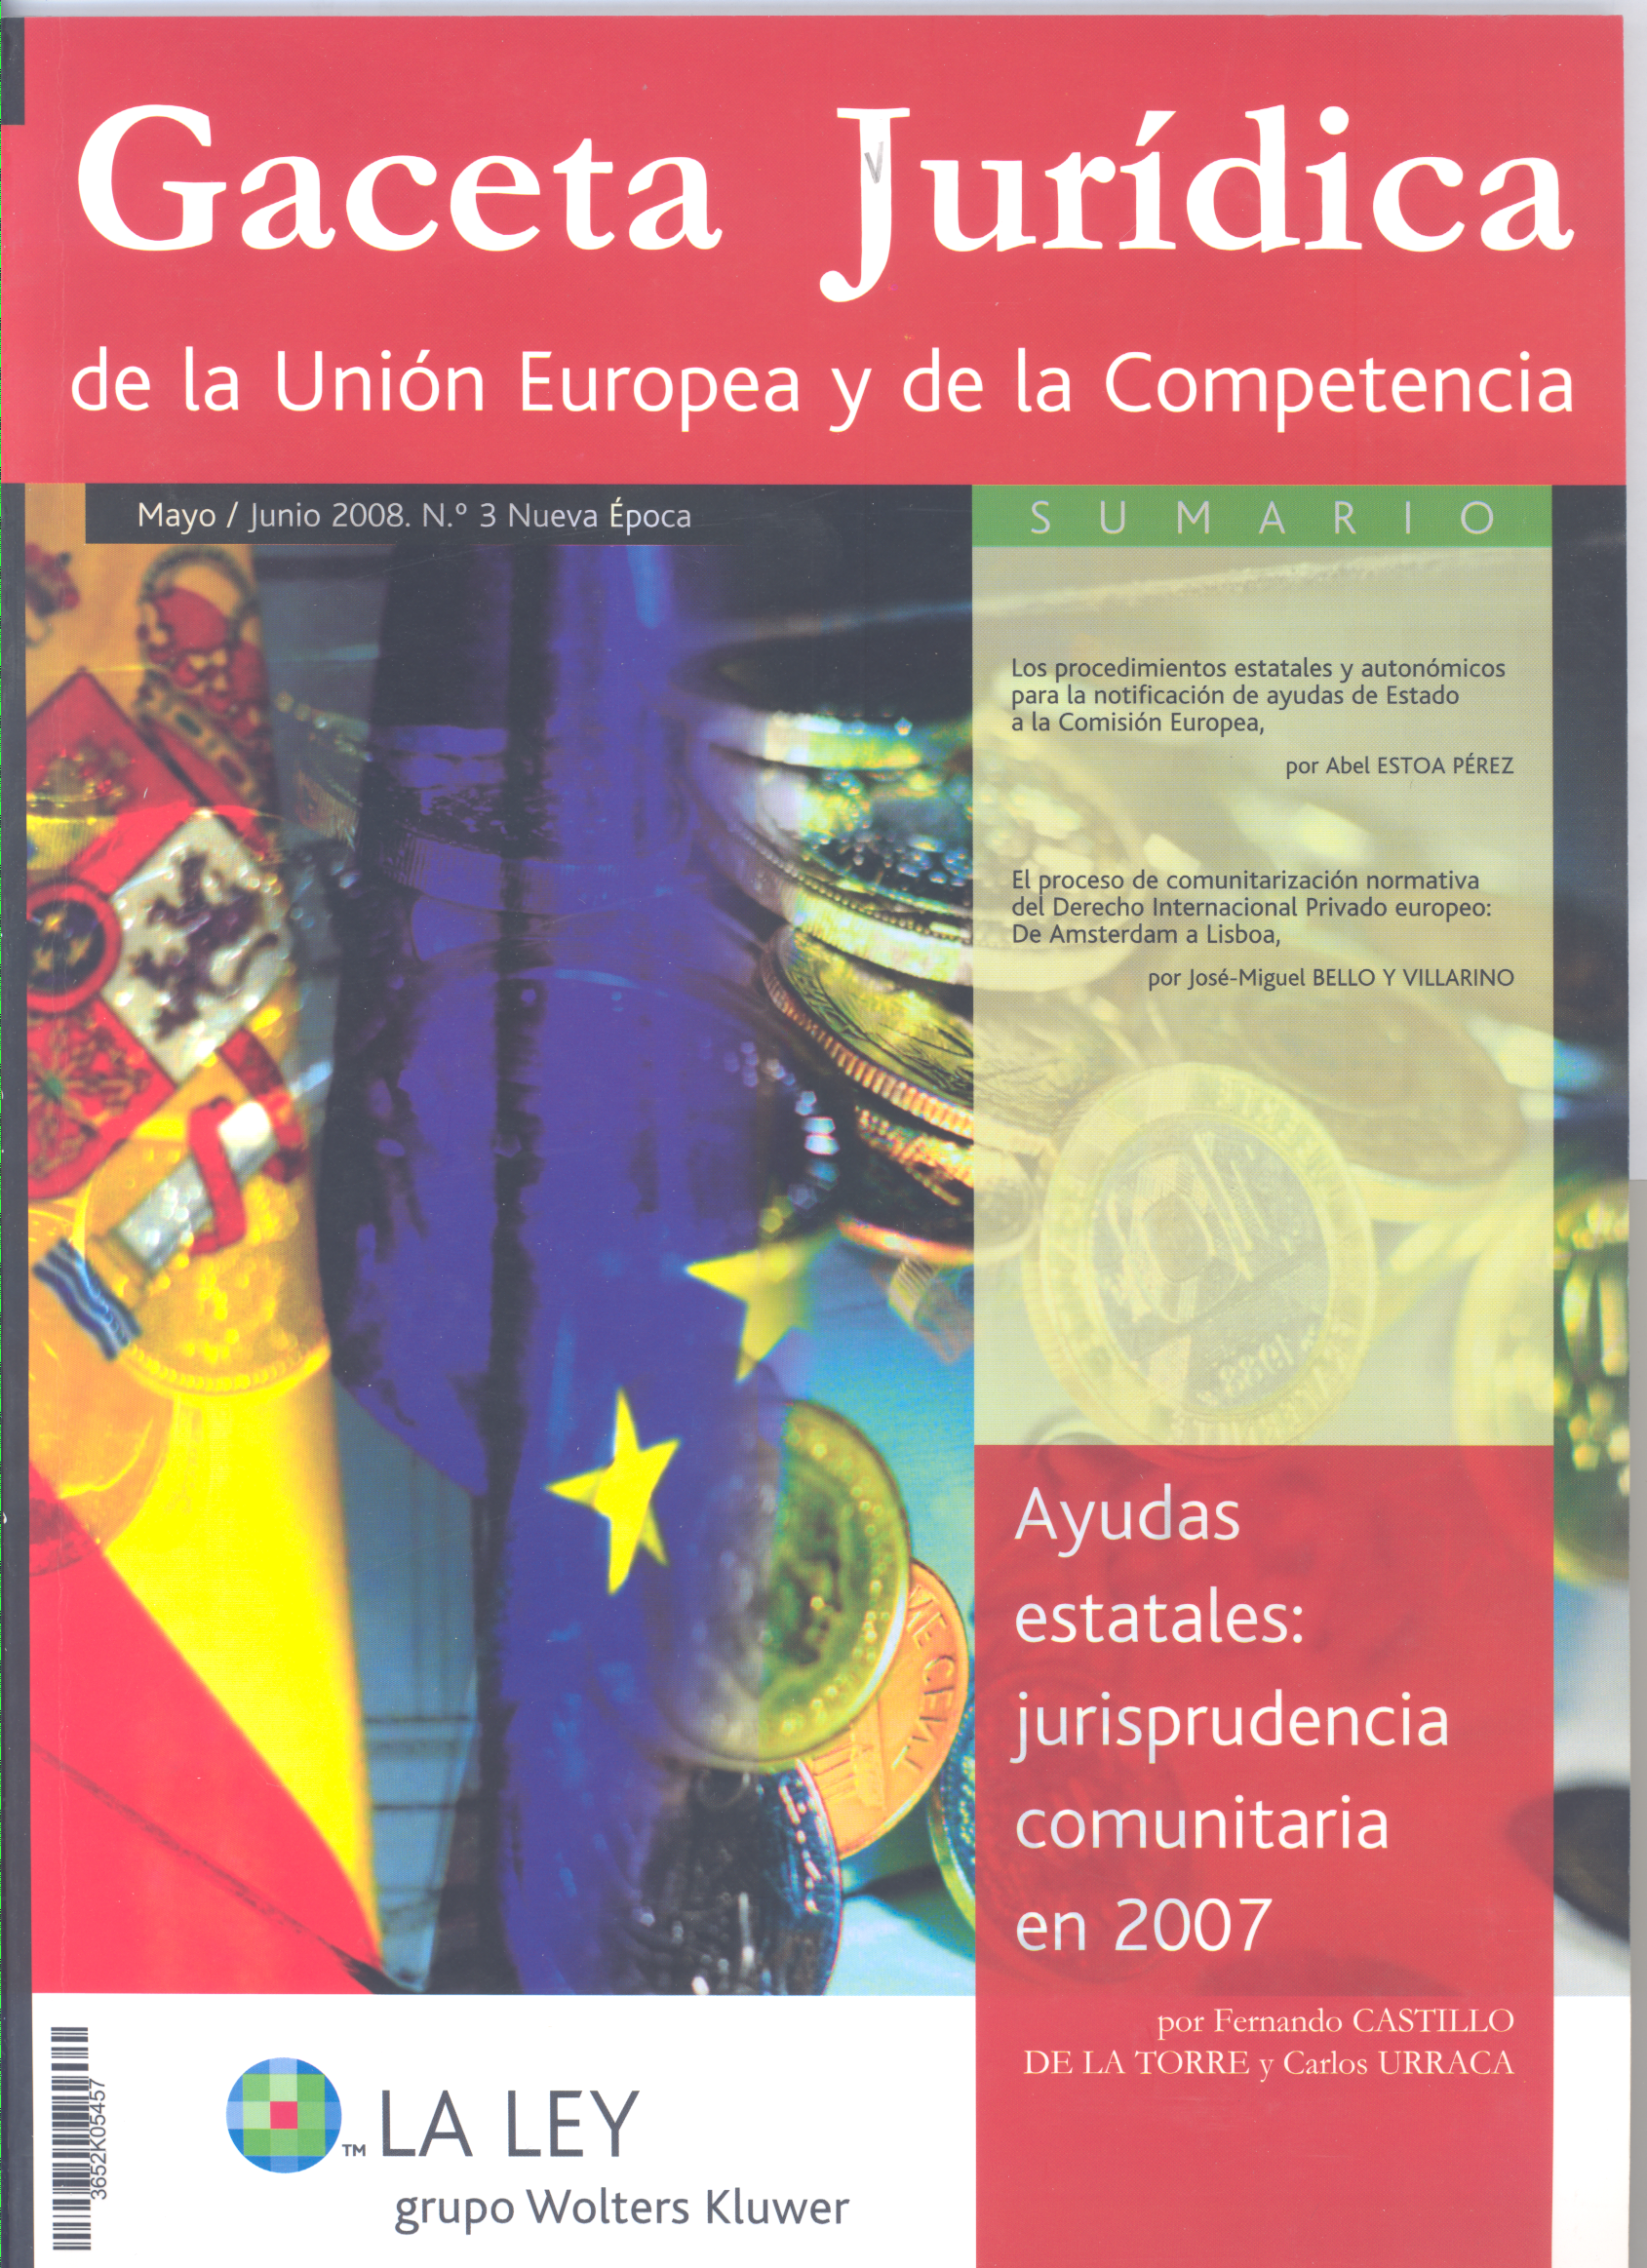 El proceso de comunitarización normativa del Derecho Internacional Privado europeo: de Amsterdam a Lisboa